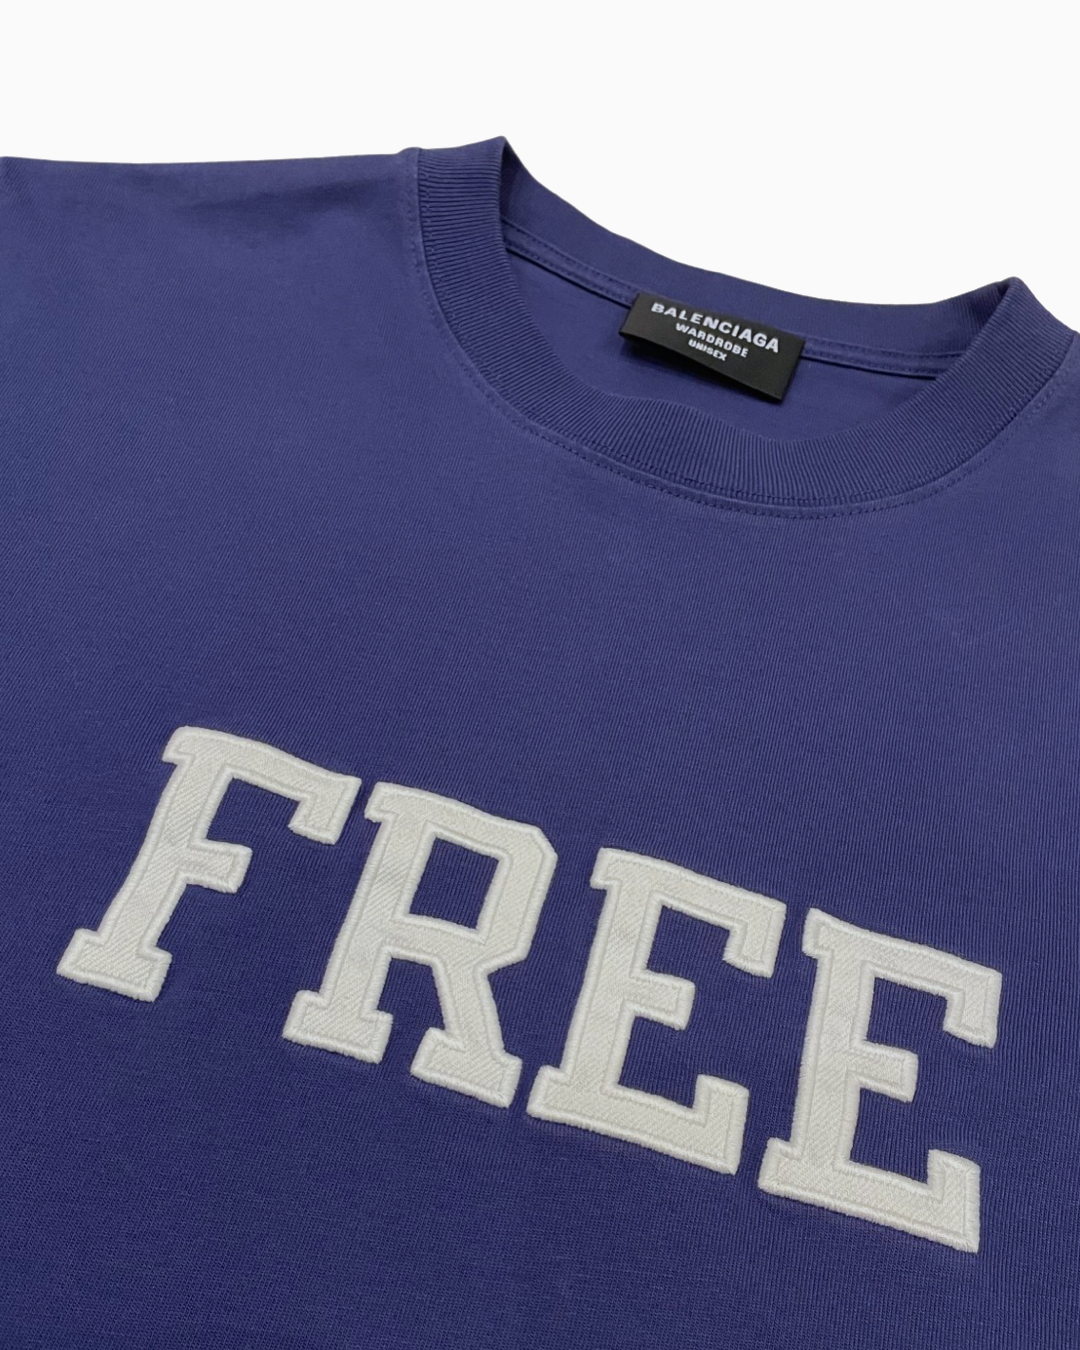 Balenciaga Free T-shirt – FUTURO